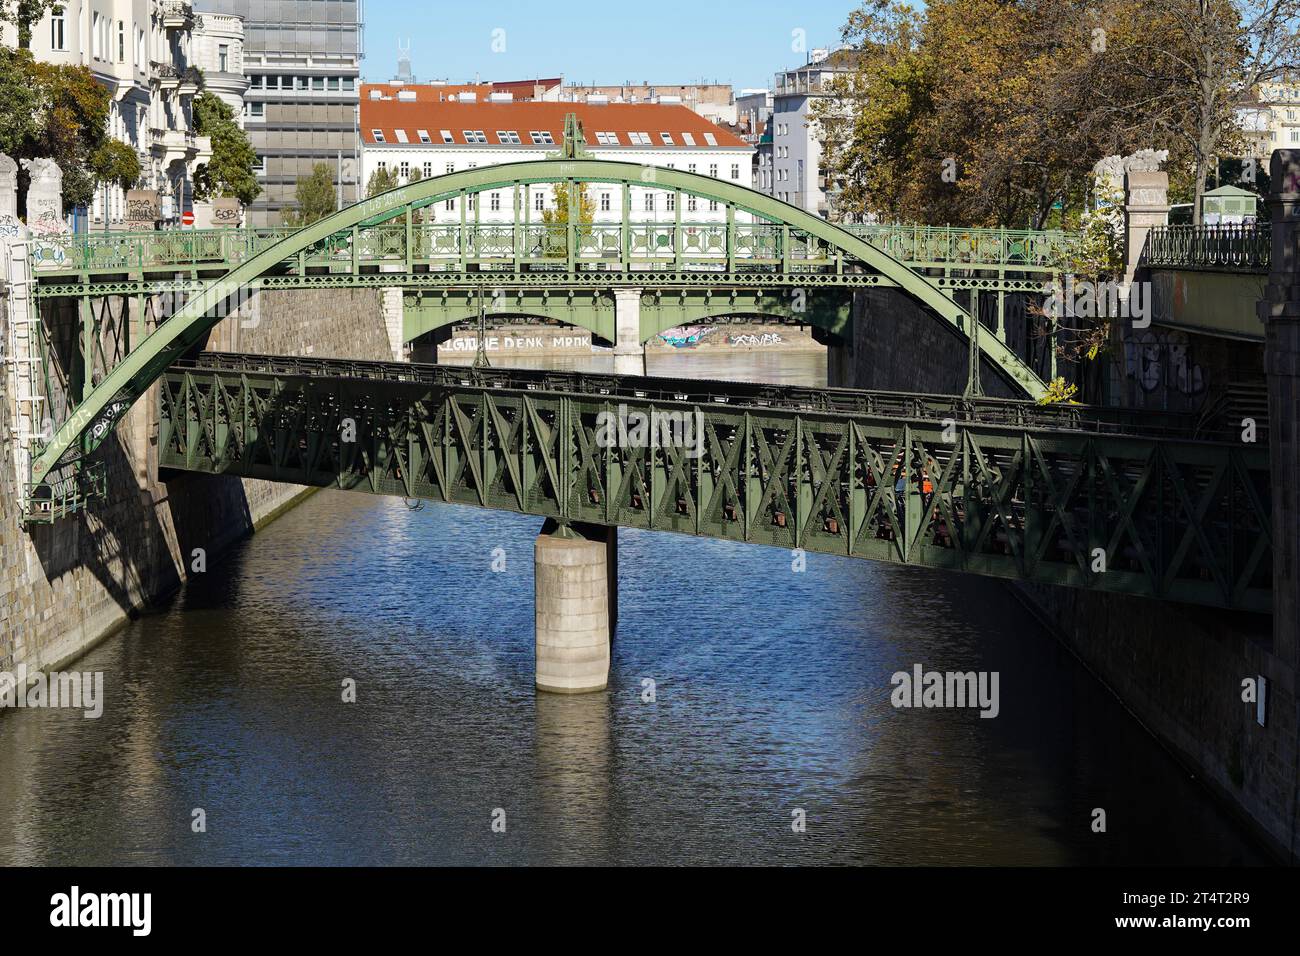 U-Bahn Brücke über Wien Fluss im November 2023, Wien, Österreich, Grenze zwischen 1. und 3. Wiener Gemeindebezirk, mündet a Donaukanal Foto Stock